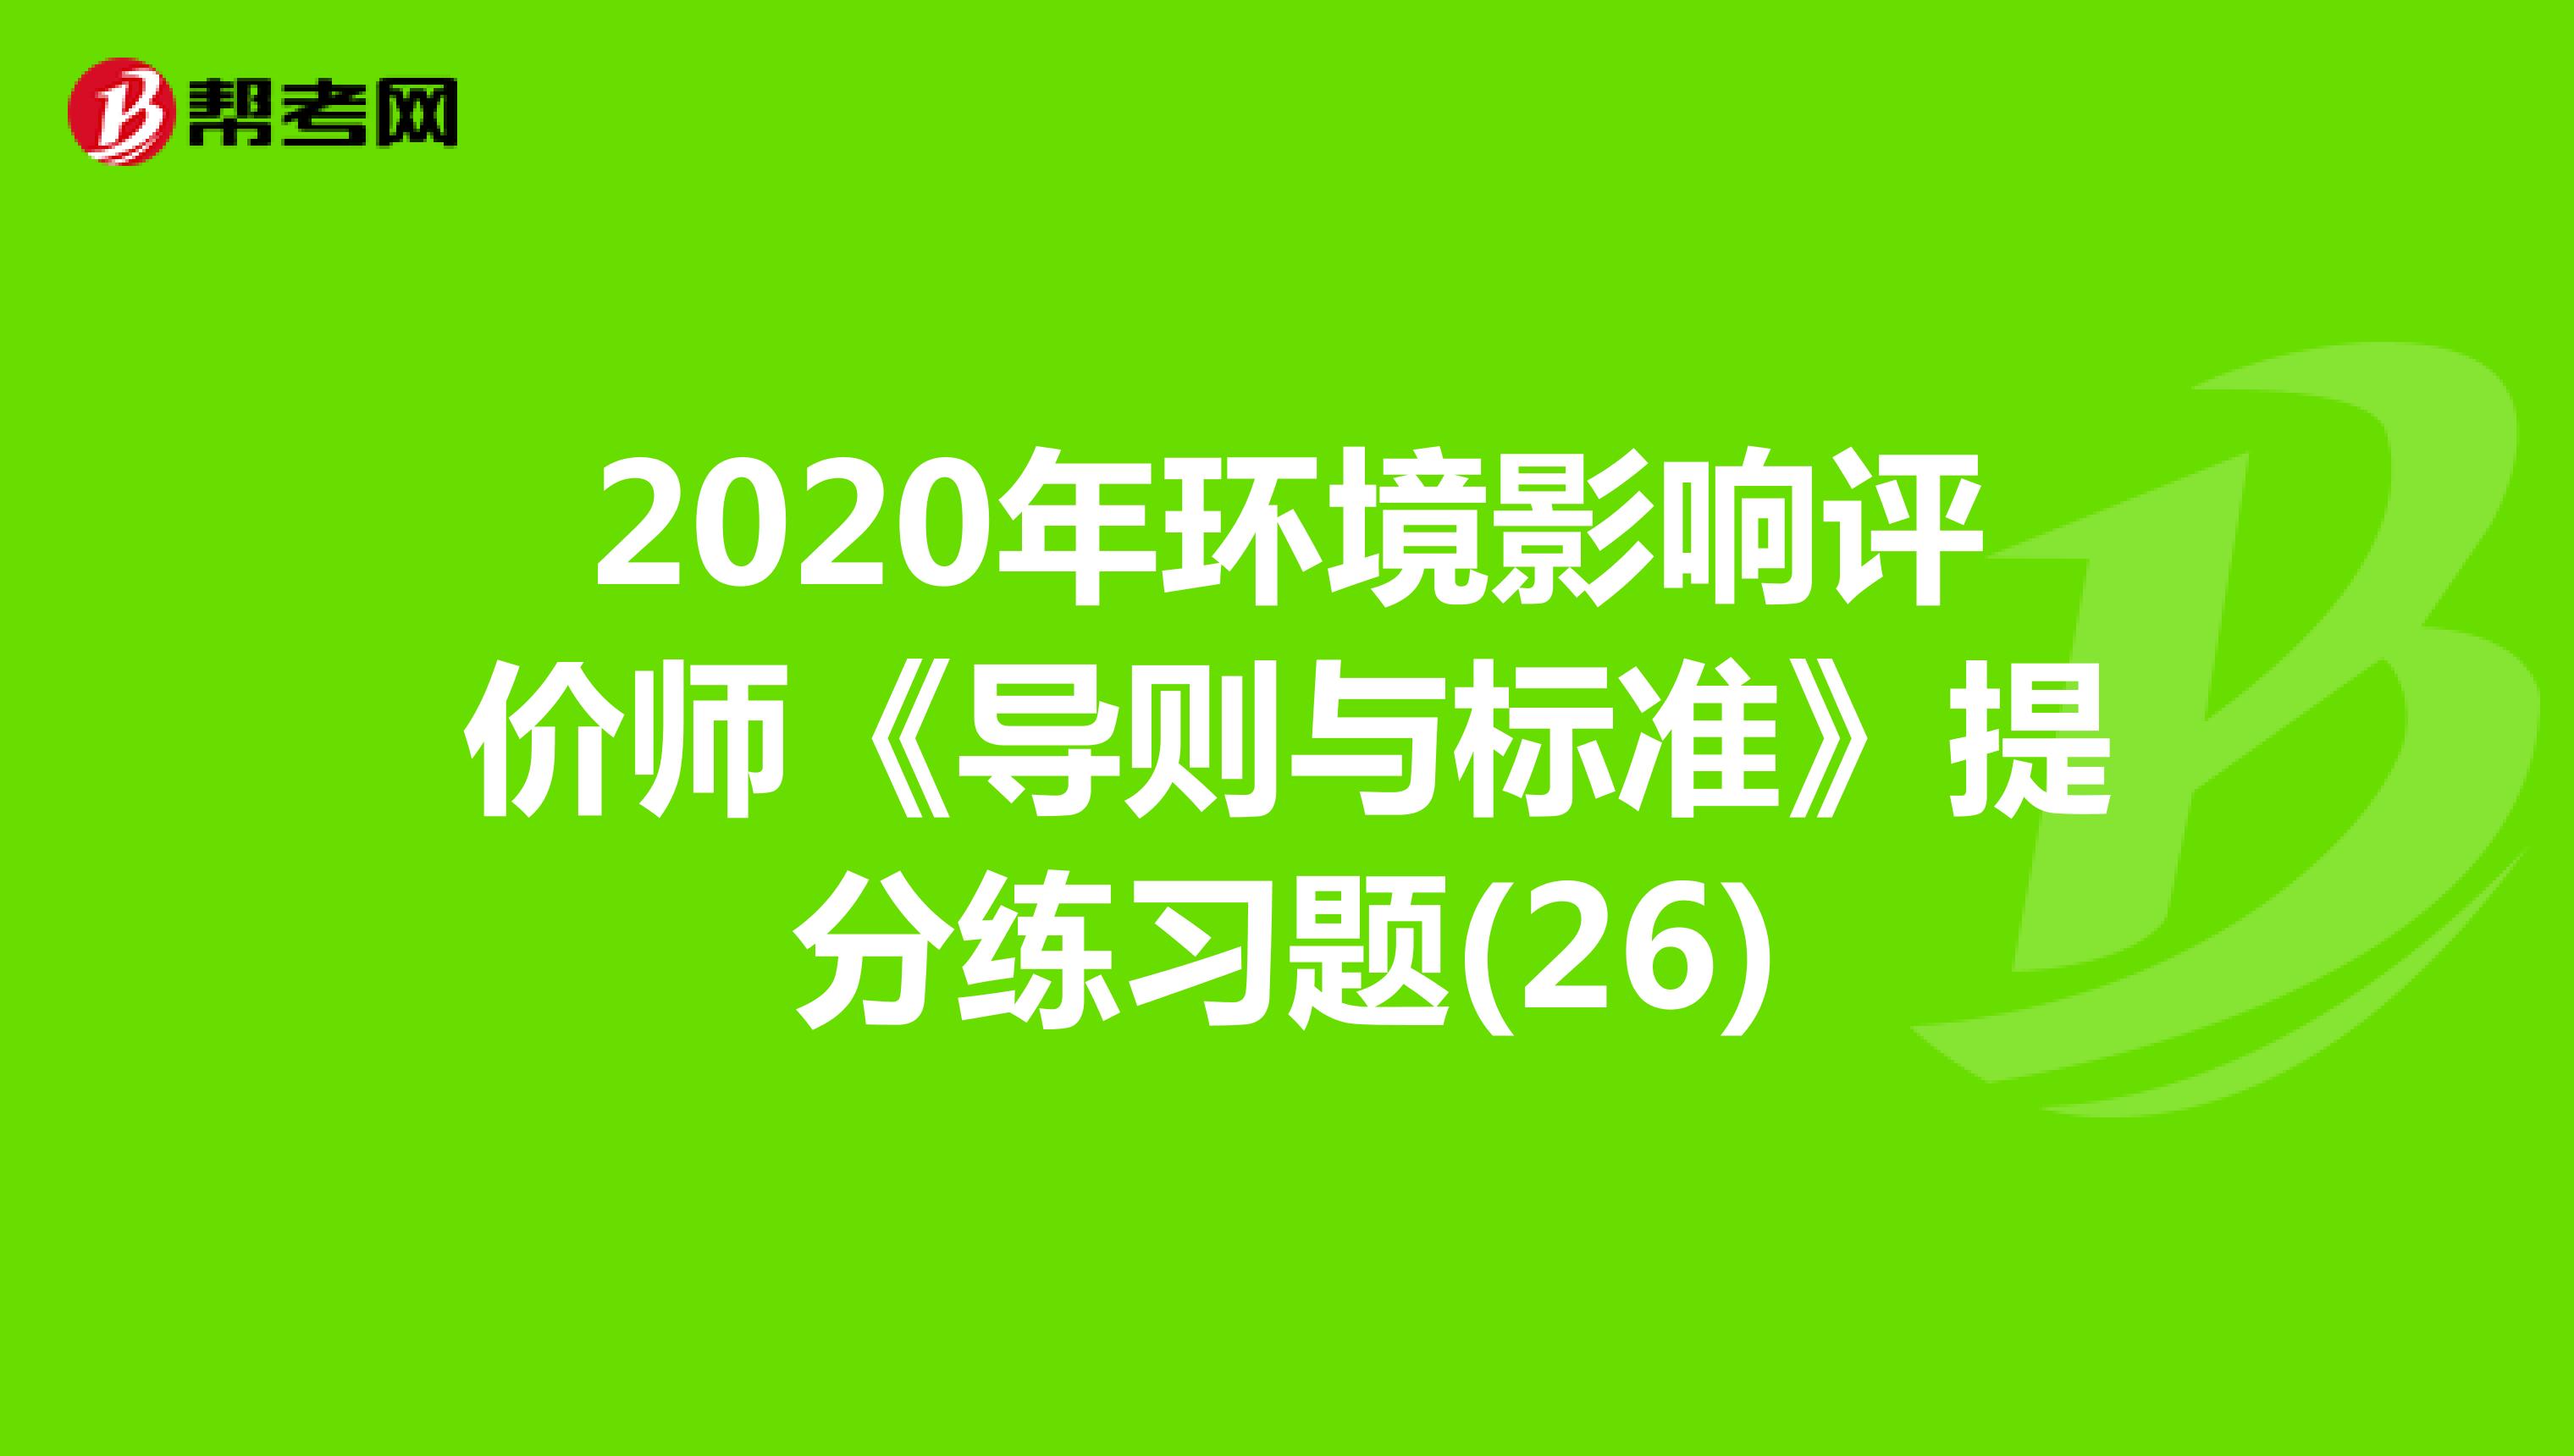 2020年环境影响评价师《导则与标准》提分练习题(26)